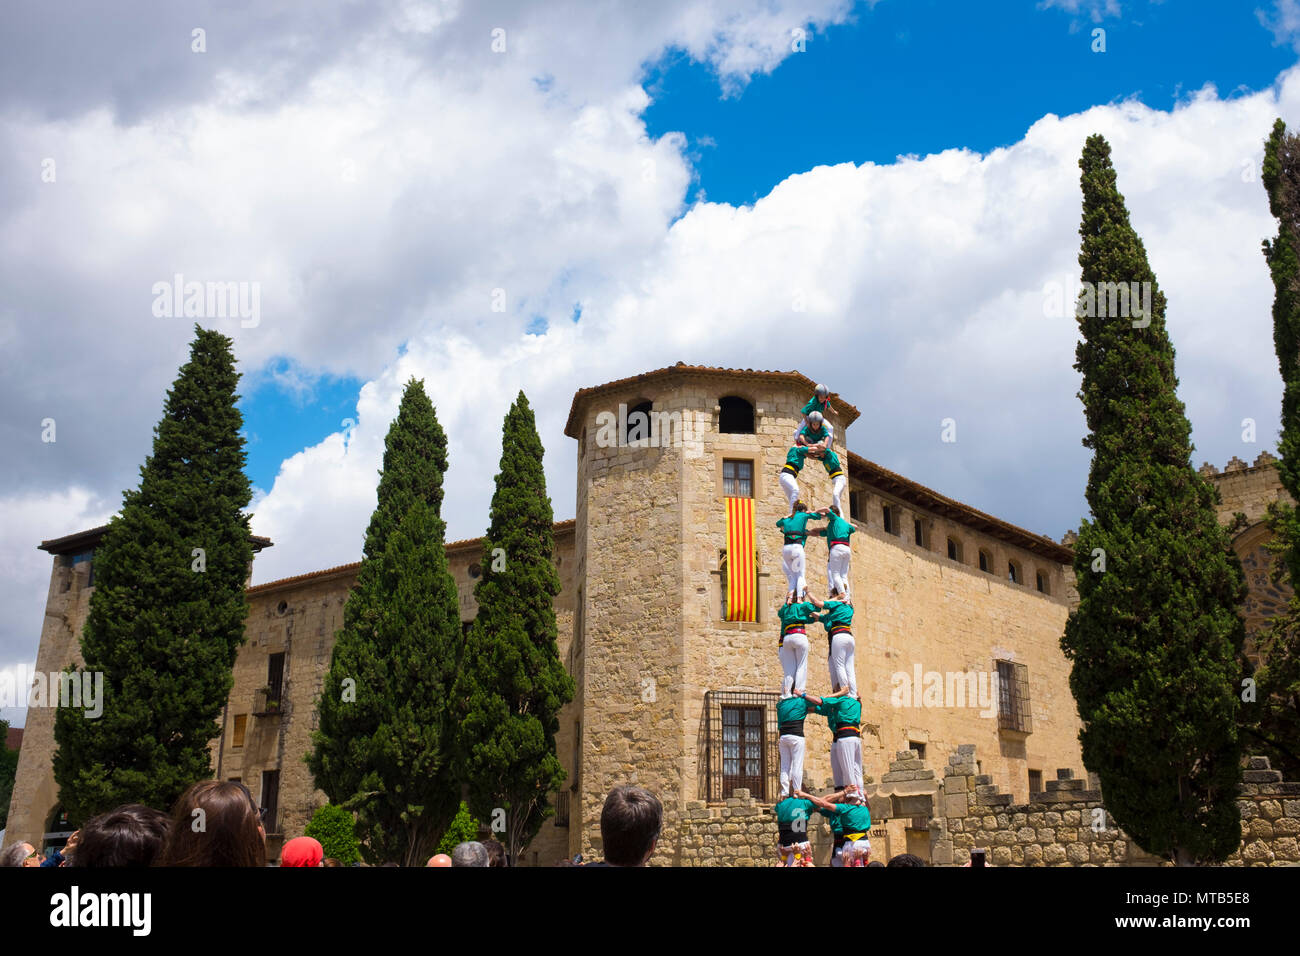 Castellers - Catalan tours humaines dans la Placa Octavia, Sant Cugat del Valles, supporter de Barcelone, Catalogne. Banque D'Images